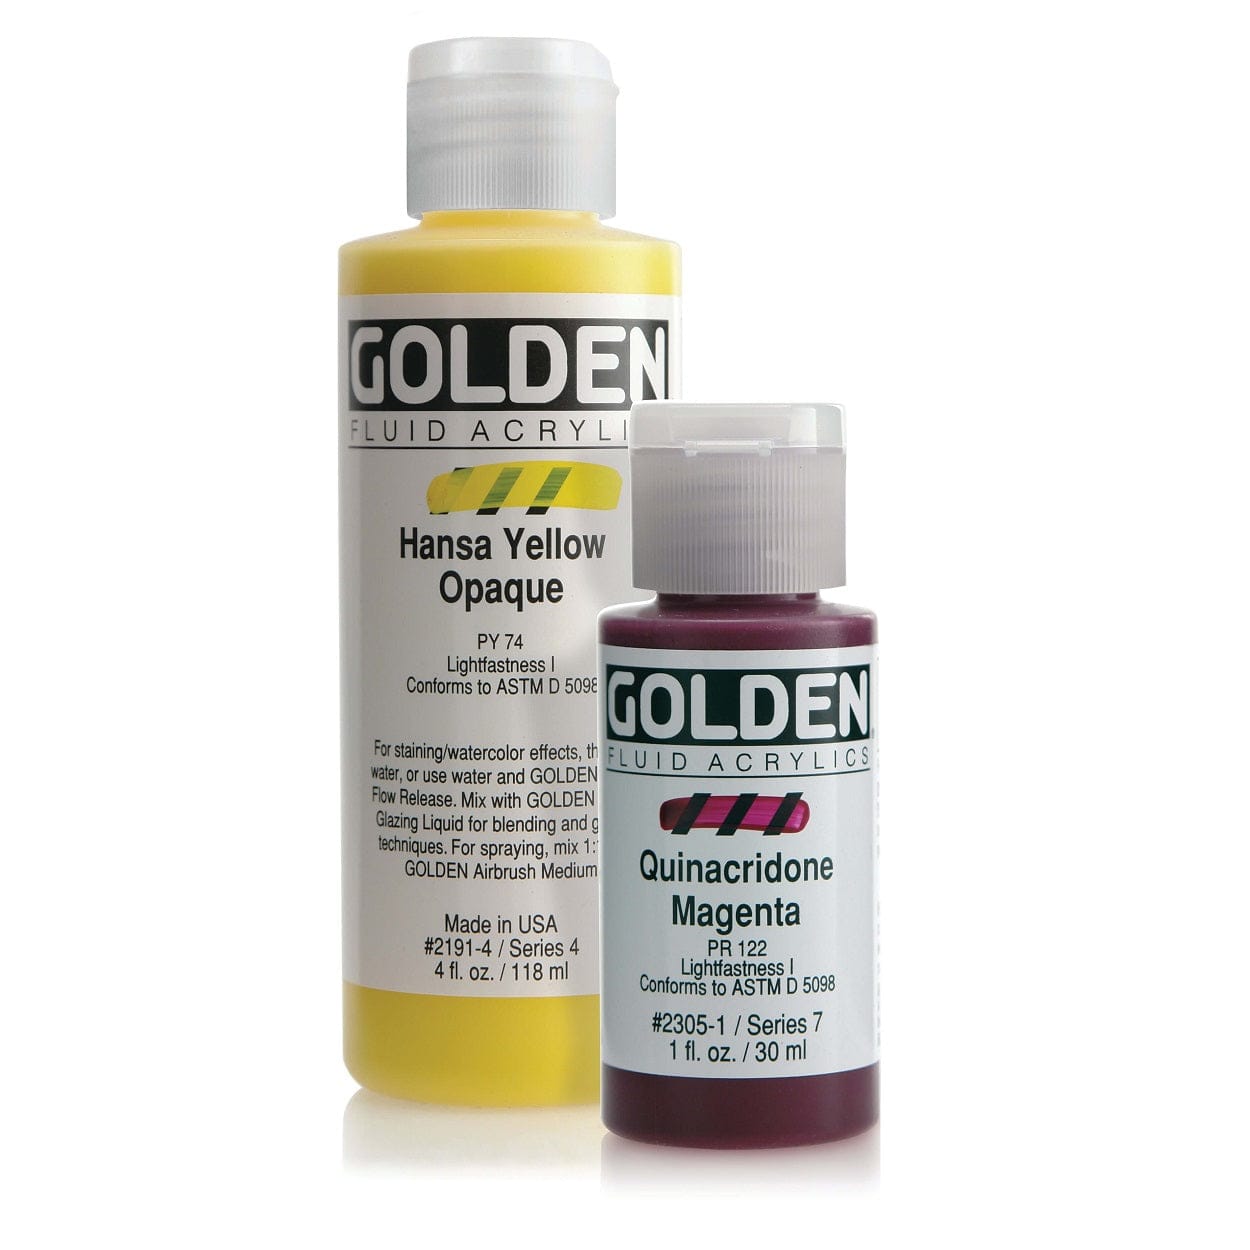 Golden Golden Fluid